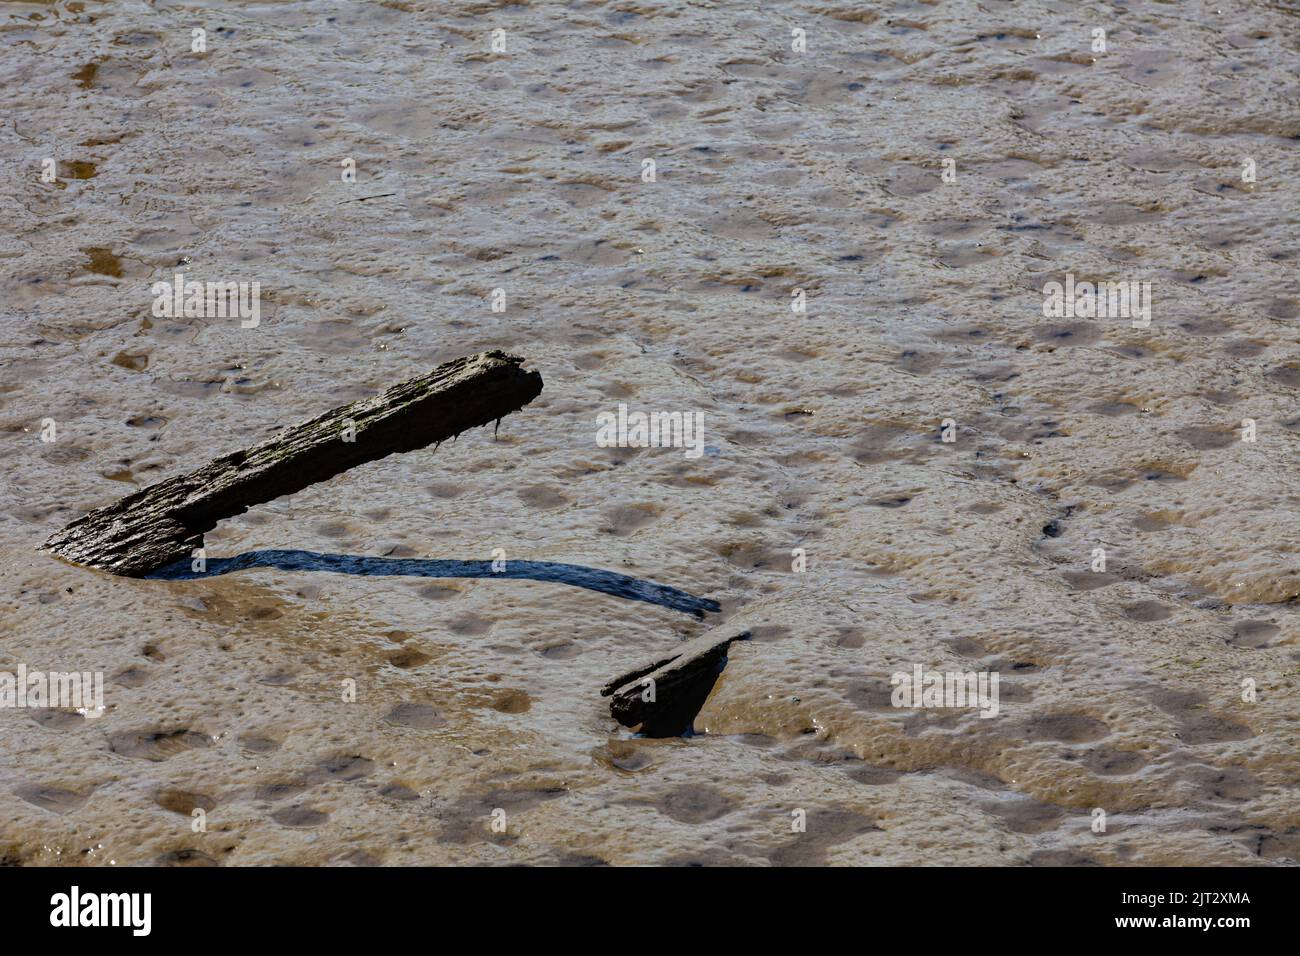 Imagen abstracta de madera podrida que sobresale de una fosa en marea baja en Steveston British Columbia Canadá Foto de stock